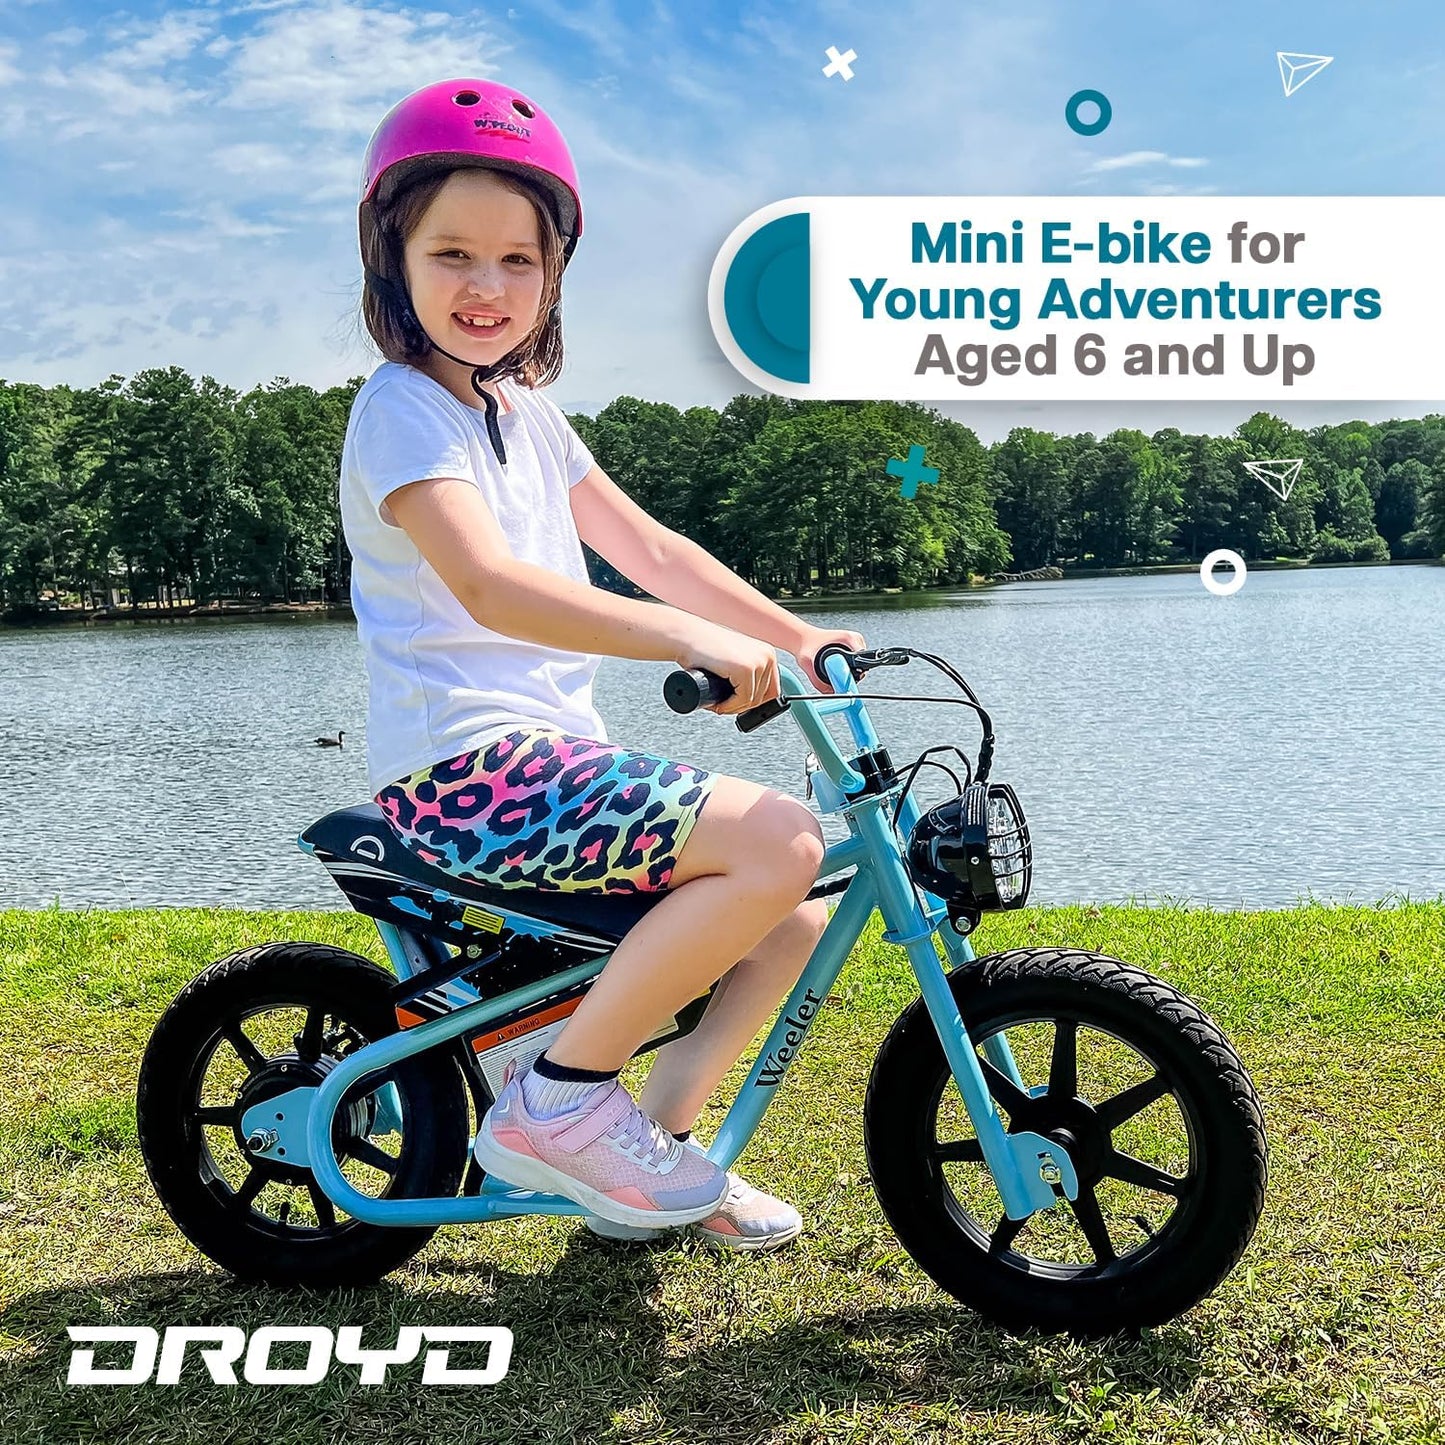 BLUE - The Droyd Weeler Electric Mini Bike - Electric Bike for Kids Ages 6 & Up - 200W Electric Bike w 6.2-10MPH up to 8 Miles - E Bike for Kids up to 45 Mins Run Time w 14in Tire, 24V 8Ah Battery